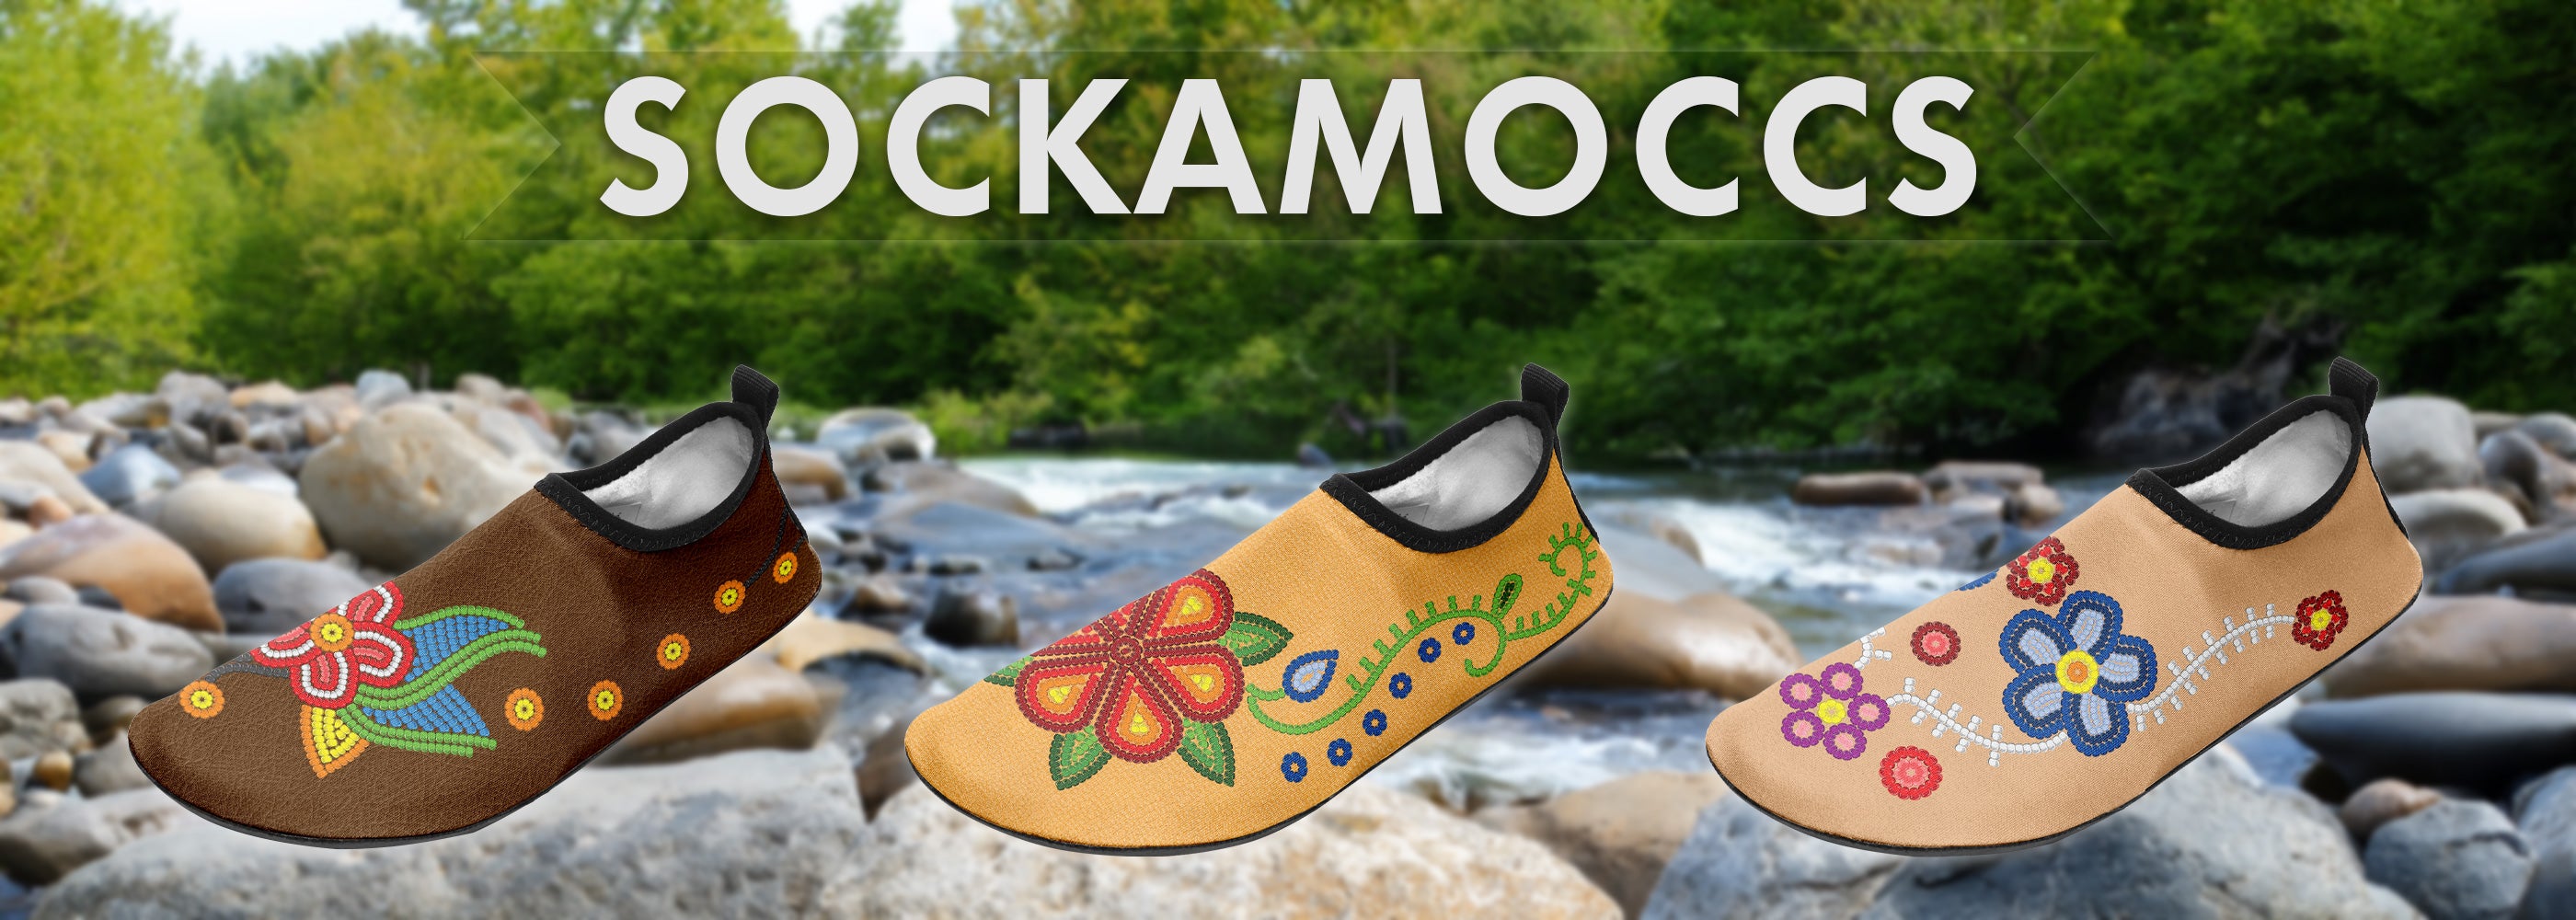 Sockamoccs Moccasin Alternative Slip On Shoe